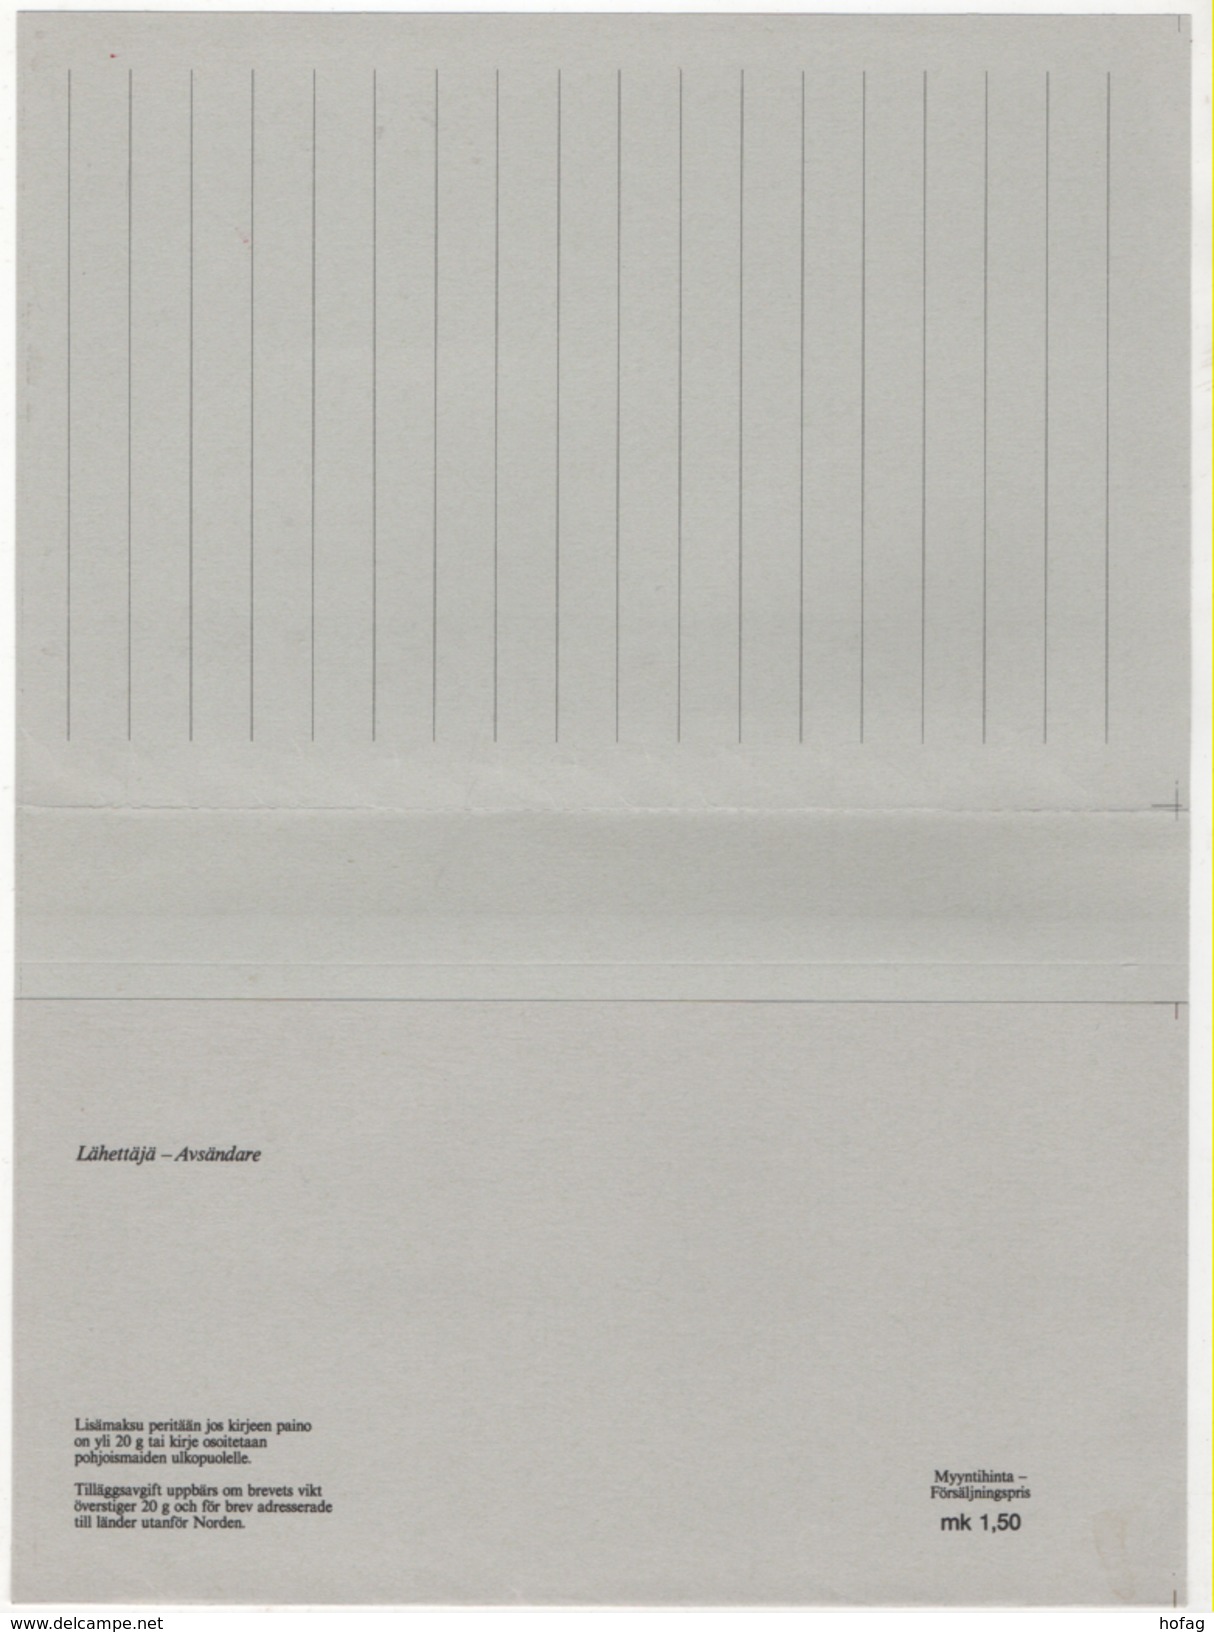 Finnland 1993 Postbrief Ganzsache "Feder Und Siegel" à 1,30 Mark,postfrisch; Postal Letter; Unused "Feather And Seal" - Postal Stationery